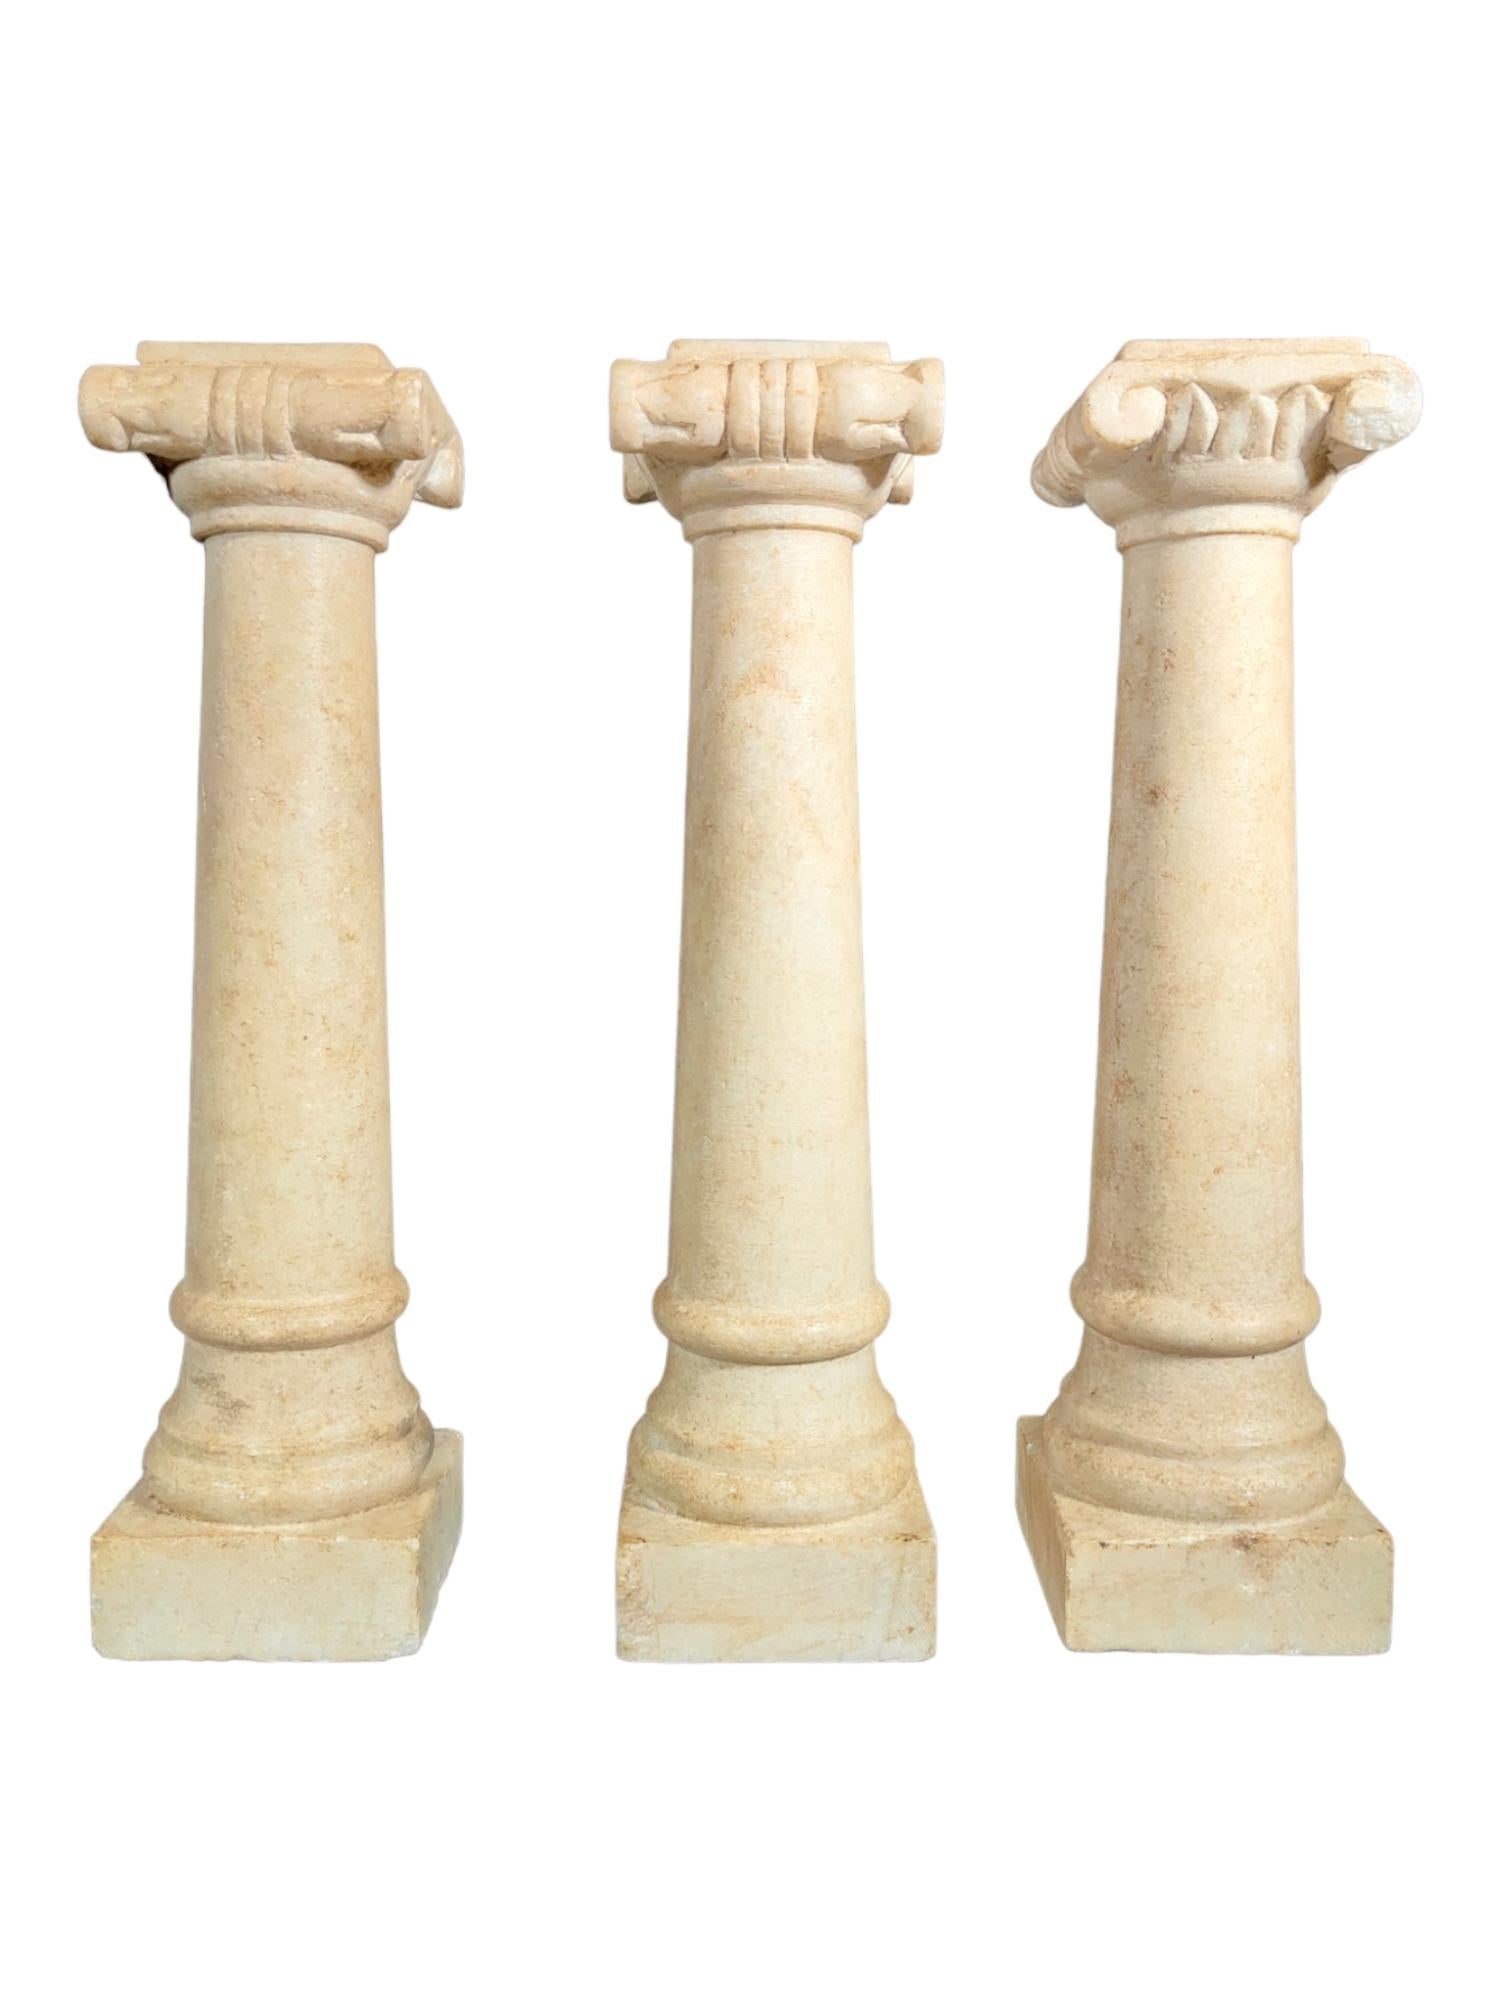 Drei Marmorsäulen aus dem 19. Jahrhundert, in gutem Zustand.
Abmessungen: 32 cm hoch.
Eigenschaften und Details:
Diese drei Marmorsäulen sind exquisite Beispiele der Handwerkskunst des 19. Jahrhunderts. Mit einer Höhe von je 32 cm strahlen sie